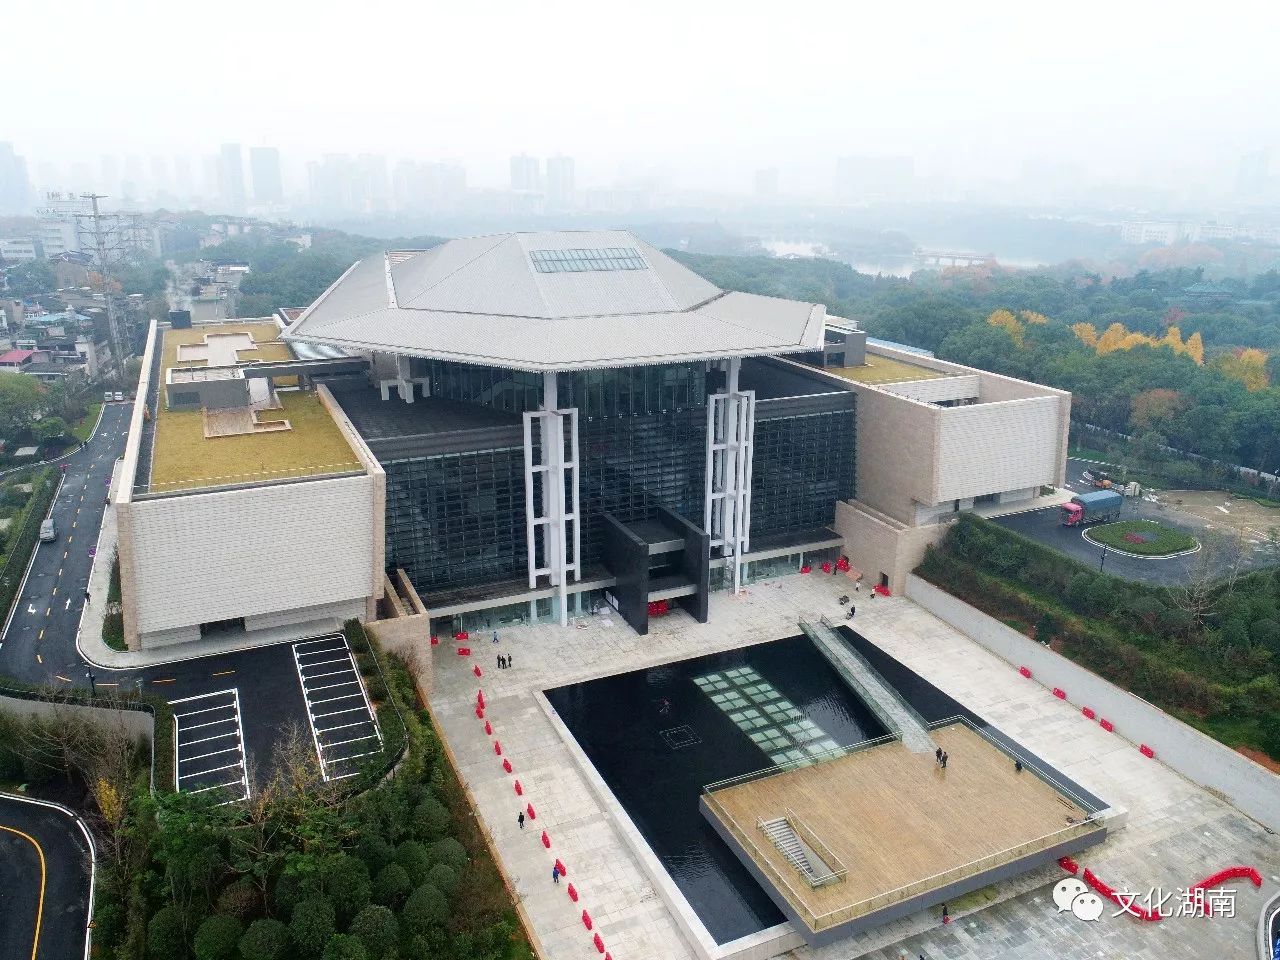 历史 正文今年11月29日,湖南省博物馆新馆开放,改版后的长沙马王堆